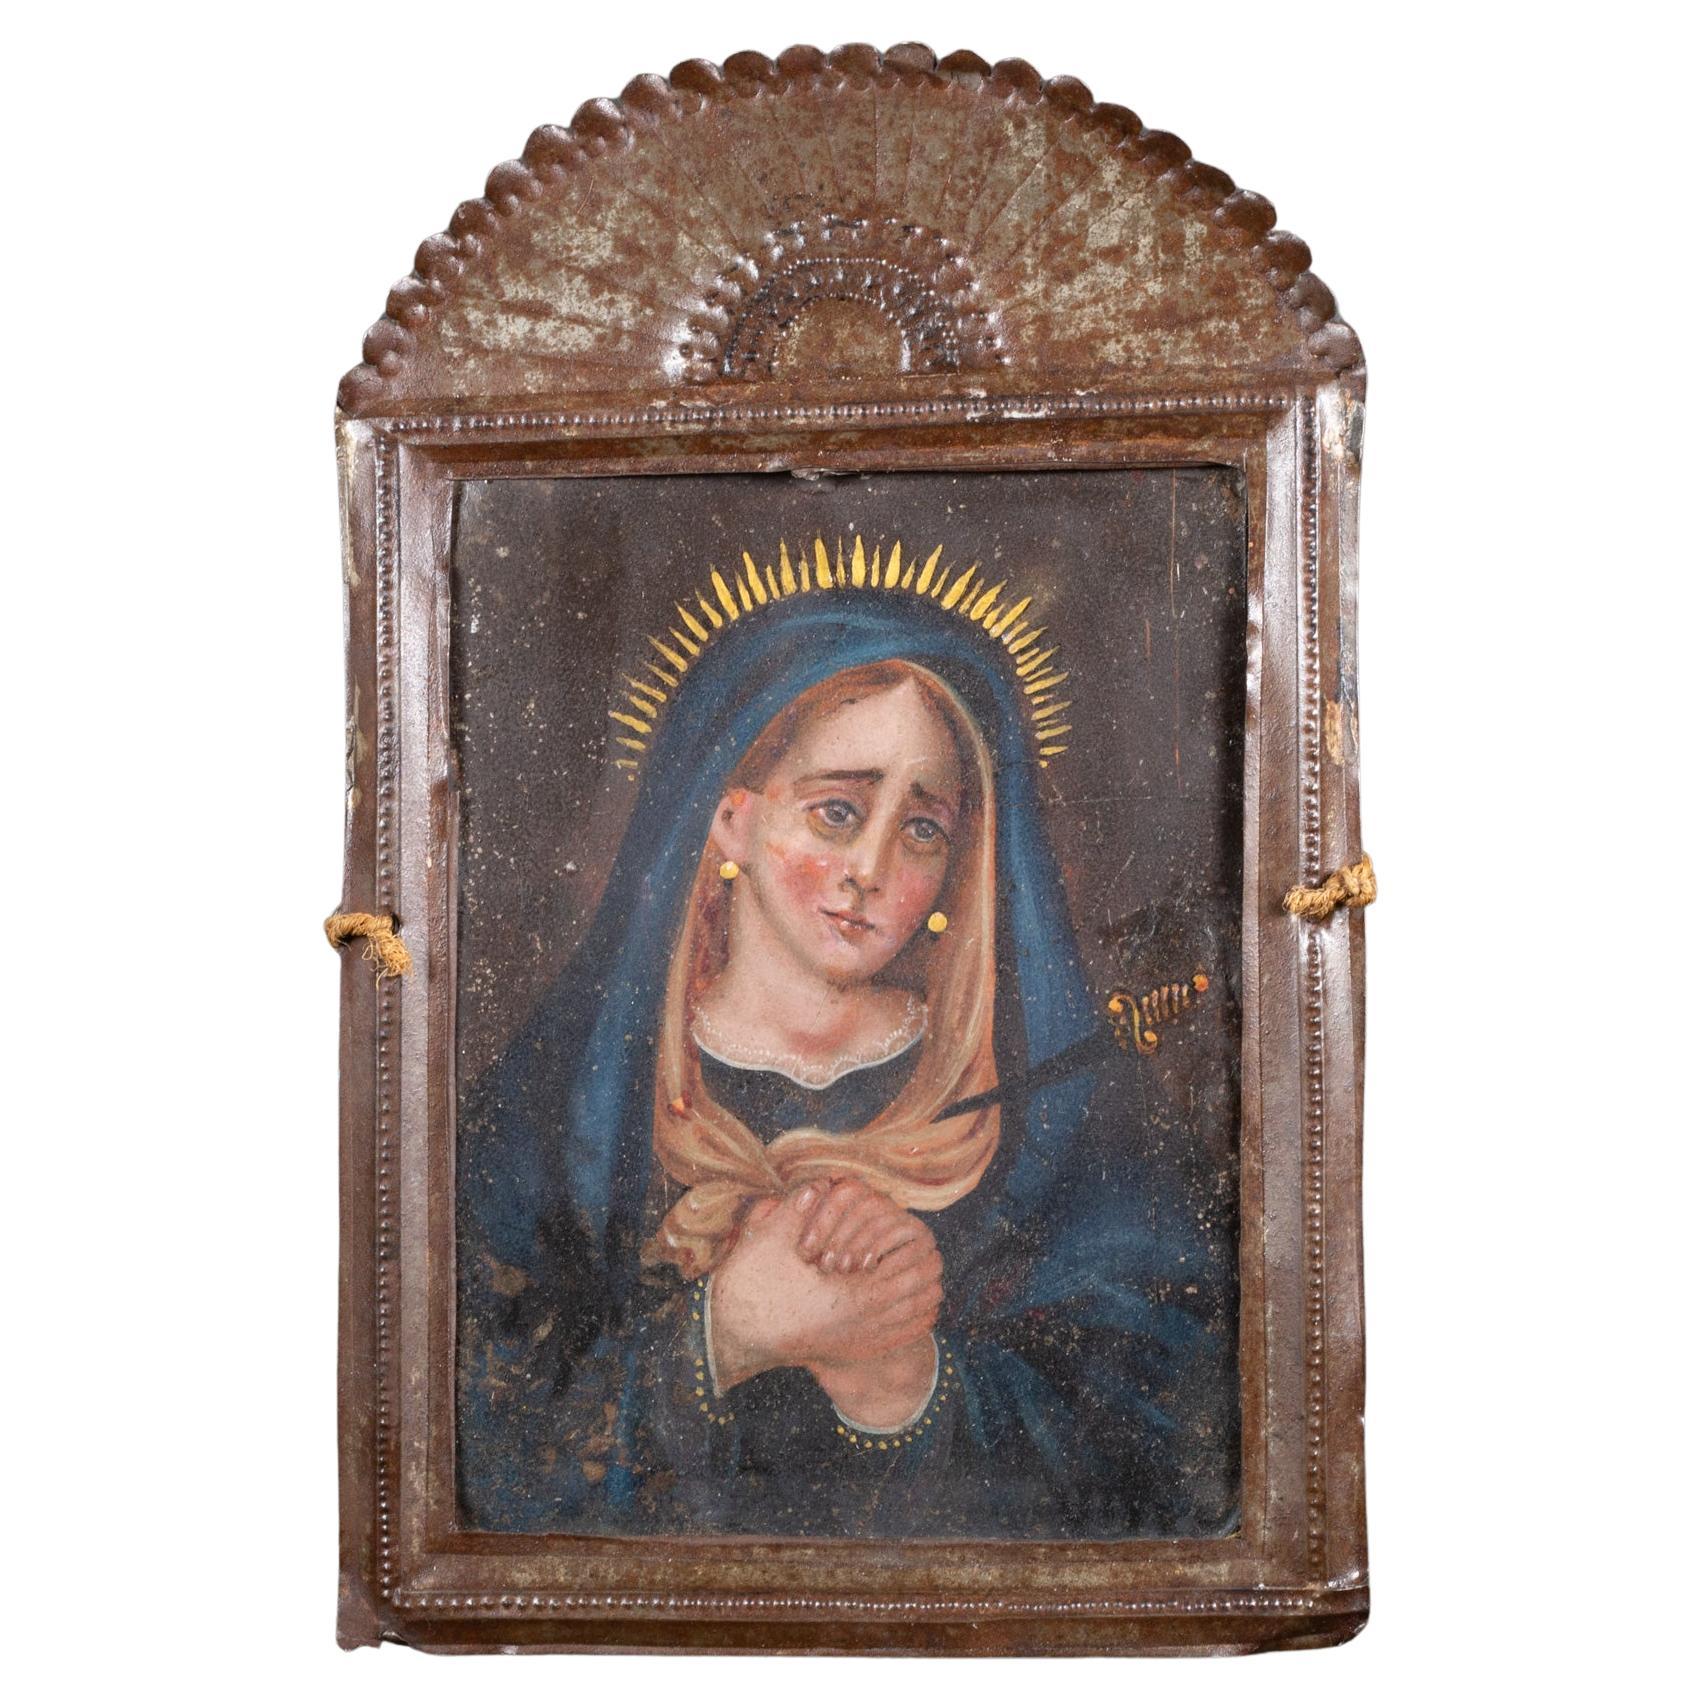 Antique Mexican Retablo "Our Lady of Sorrow"